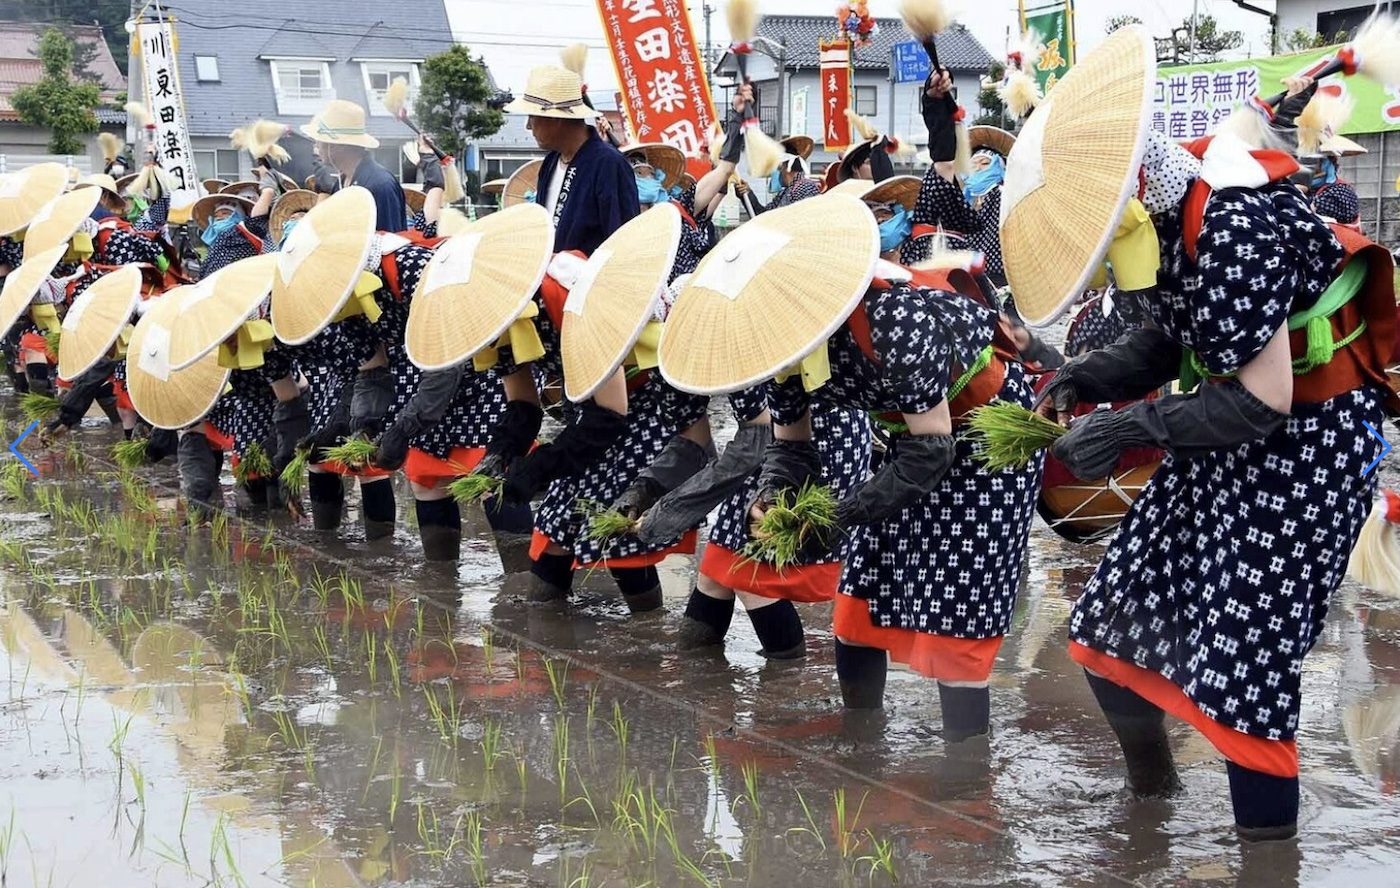 Ritual rice planting at Mibu Hanadaue festival in Kita-hiroshima